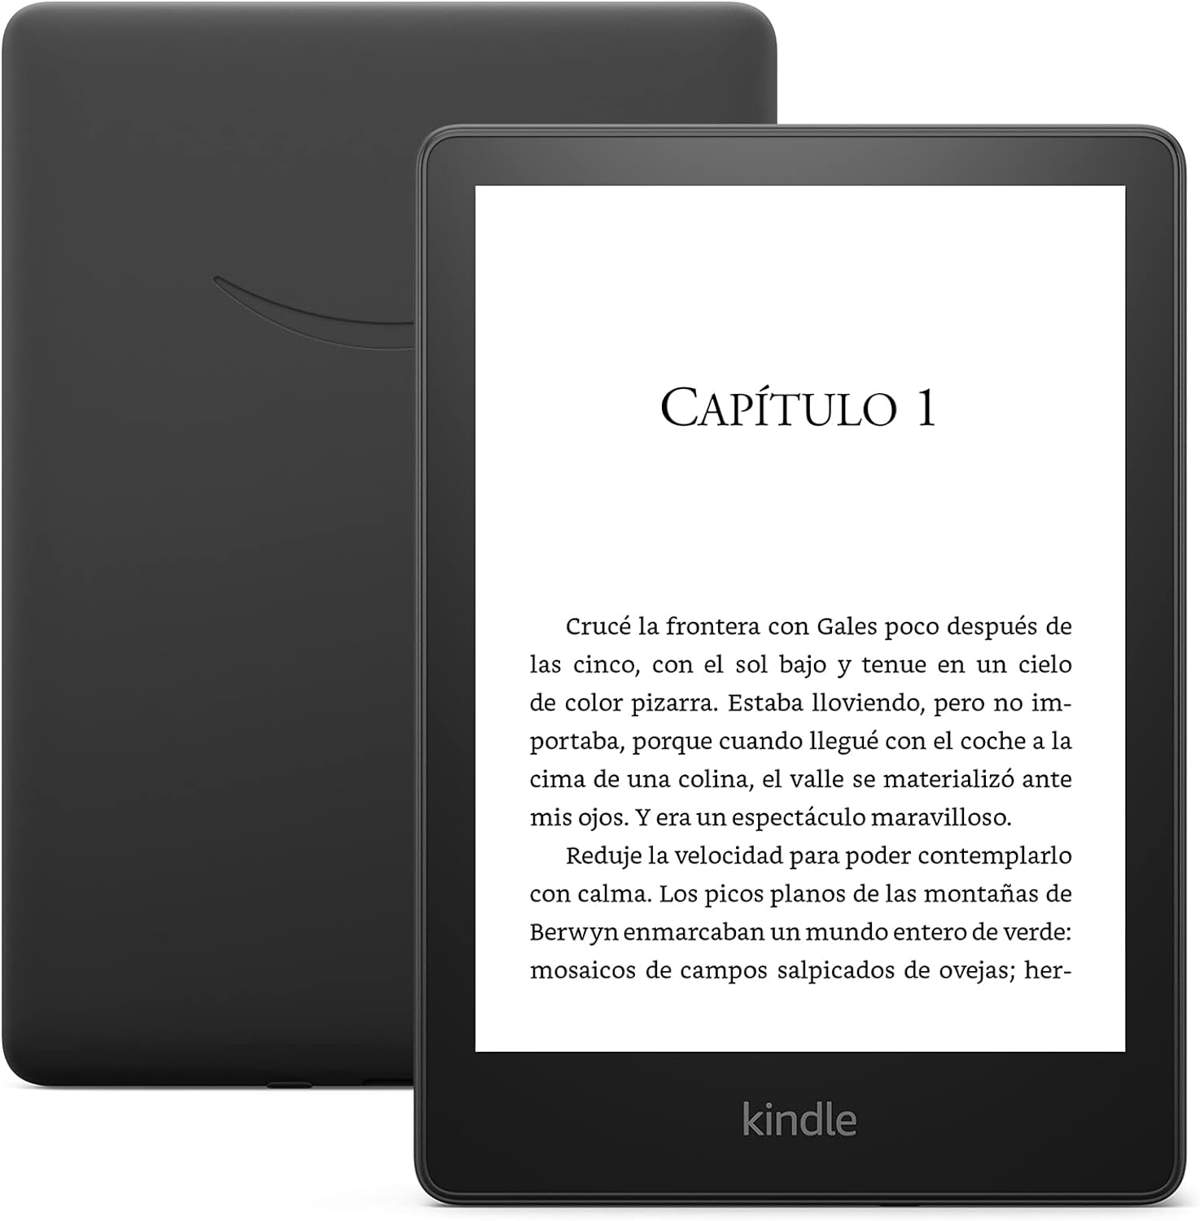 Amazon realiza un descuento histórico en su Kindle Paperwhite